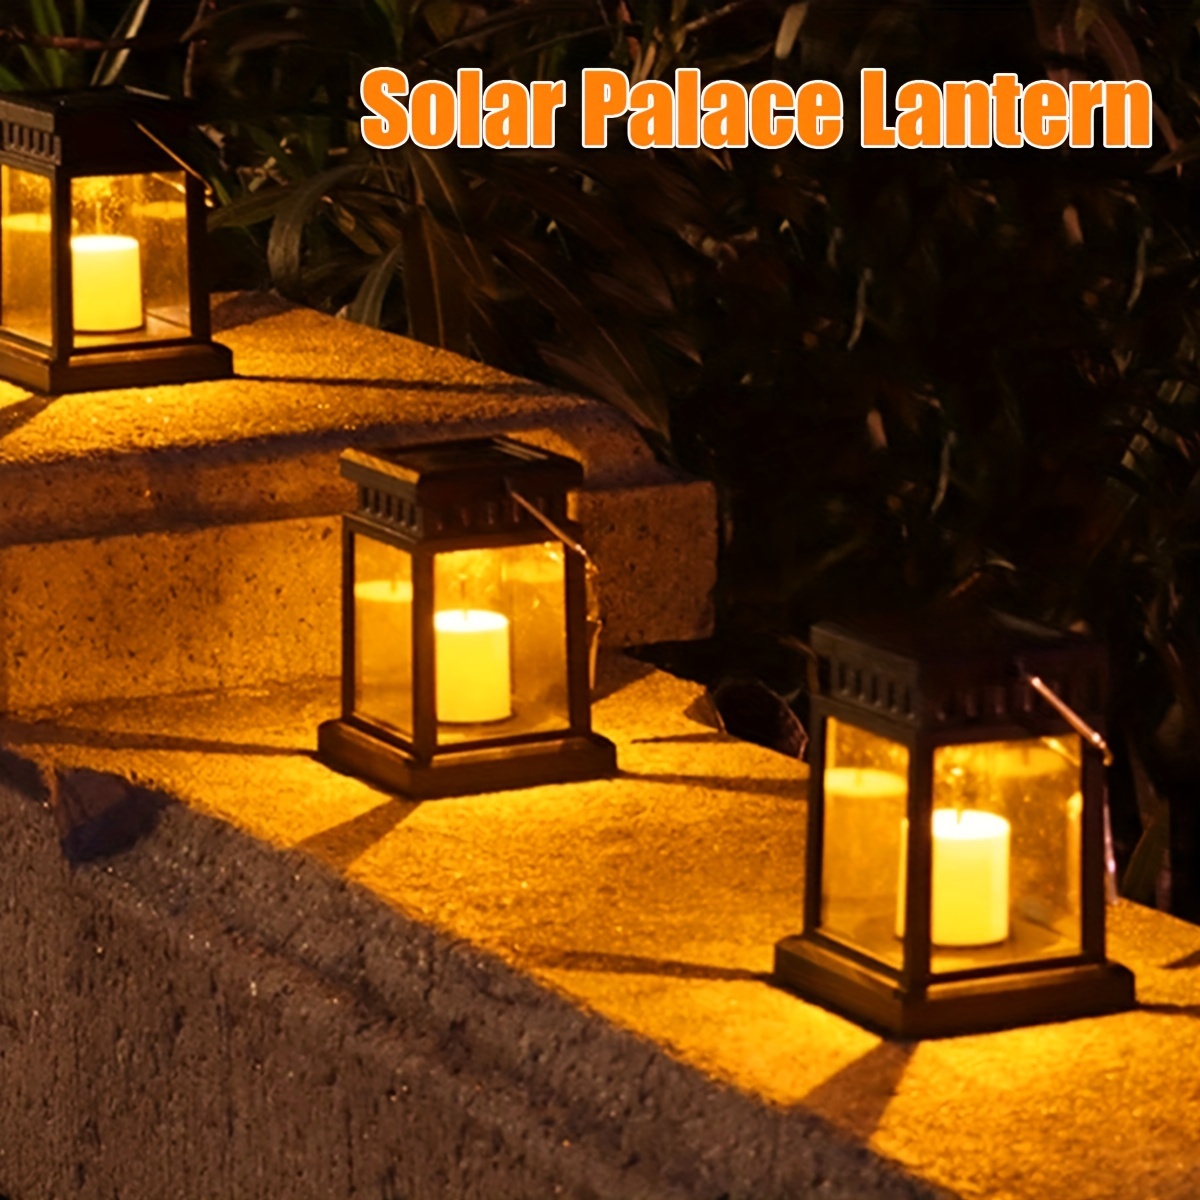 Lanterns & Lamps, Garden Lanterns